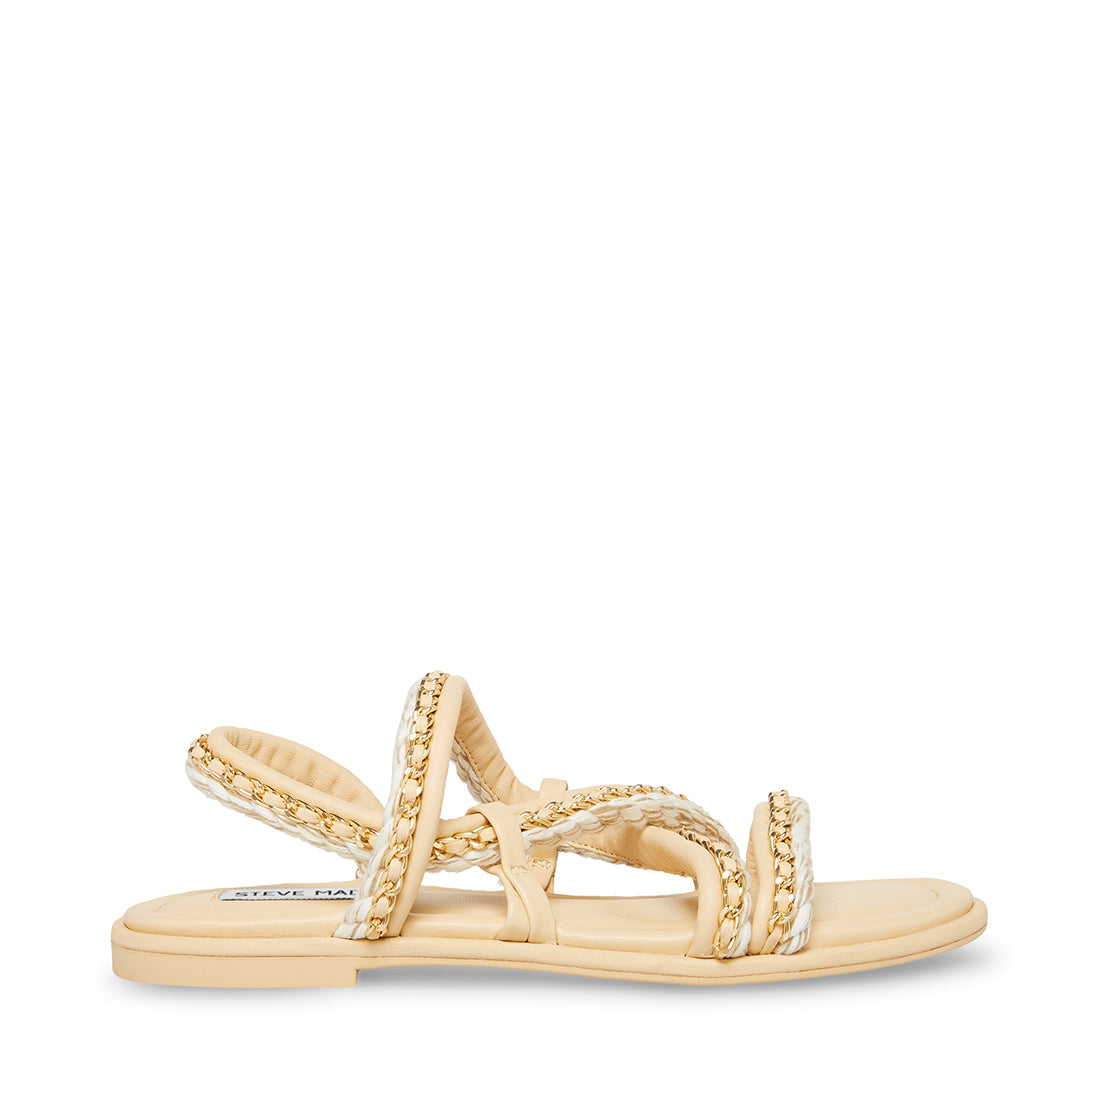 BENNET Sand Multi Strappy Sandal | Women's Sandals – Steve Madden